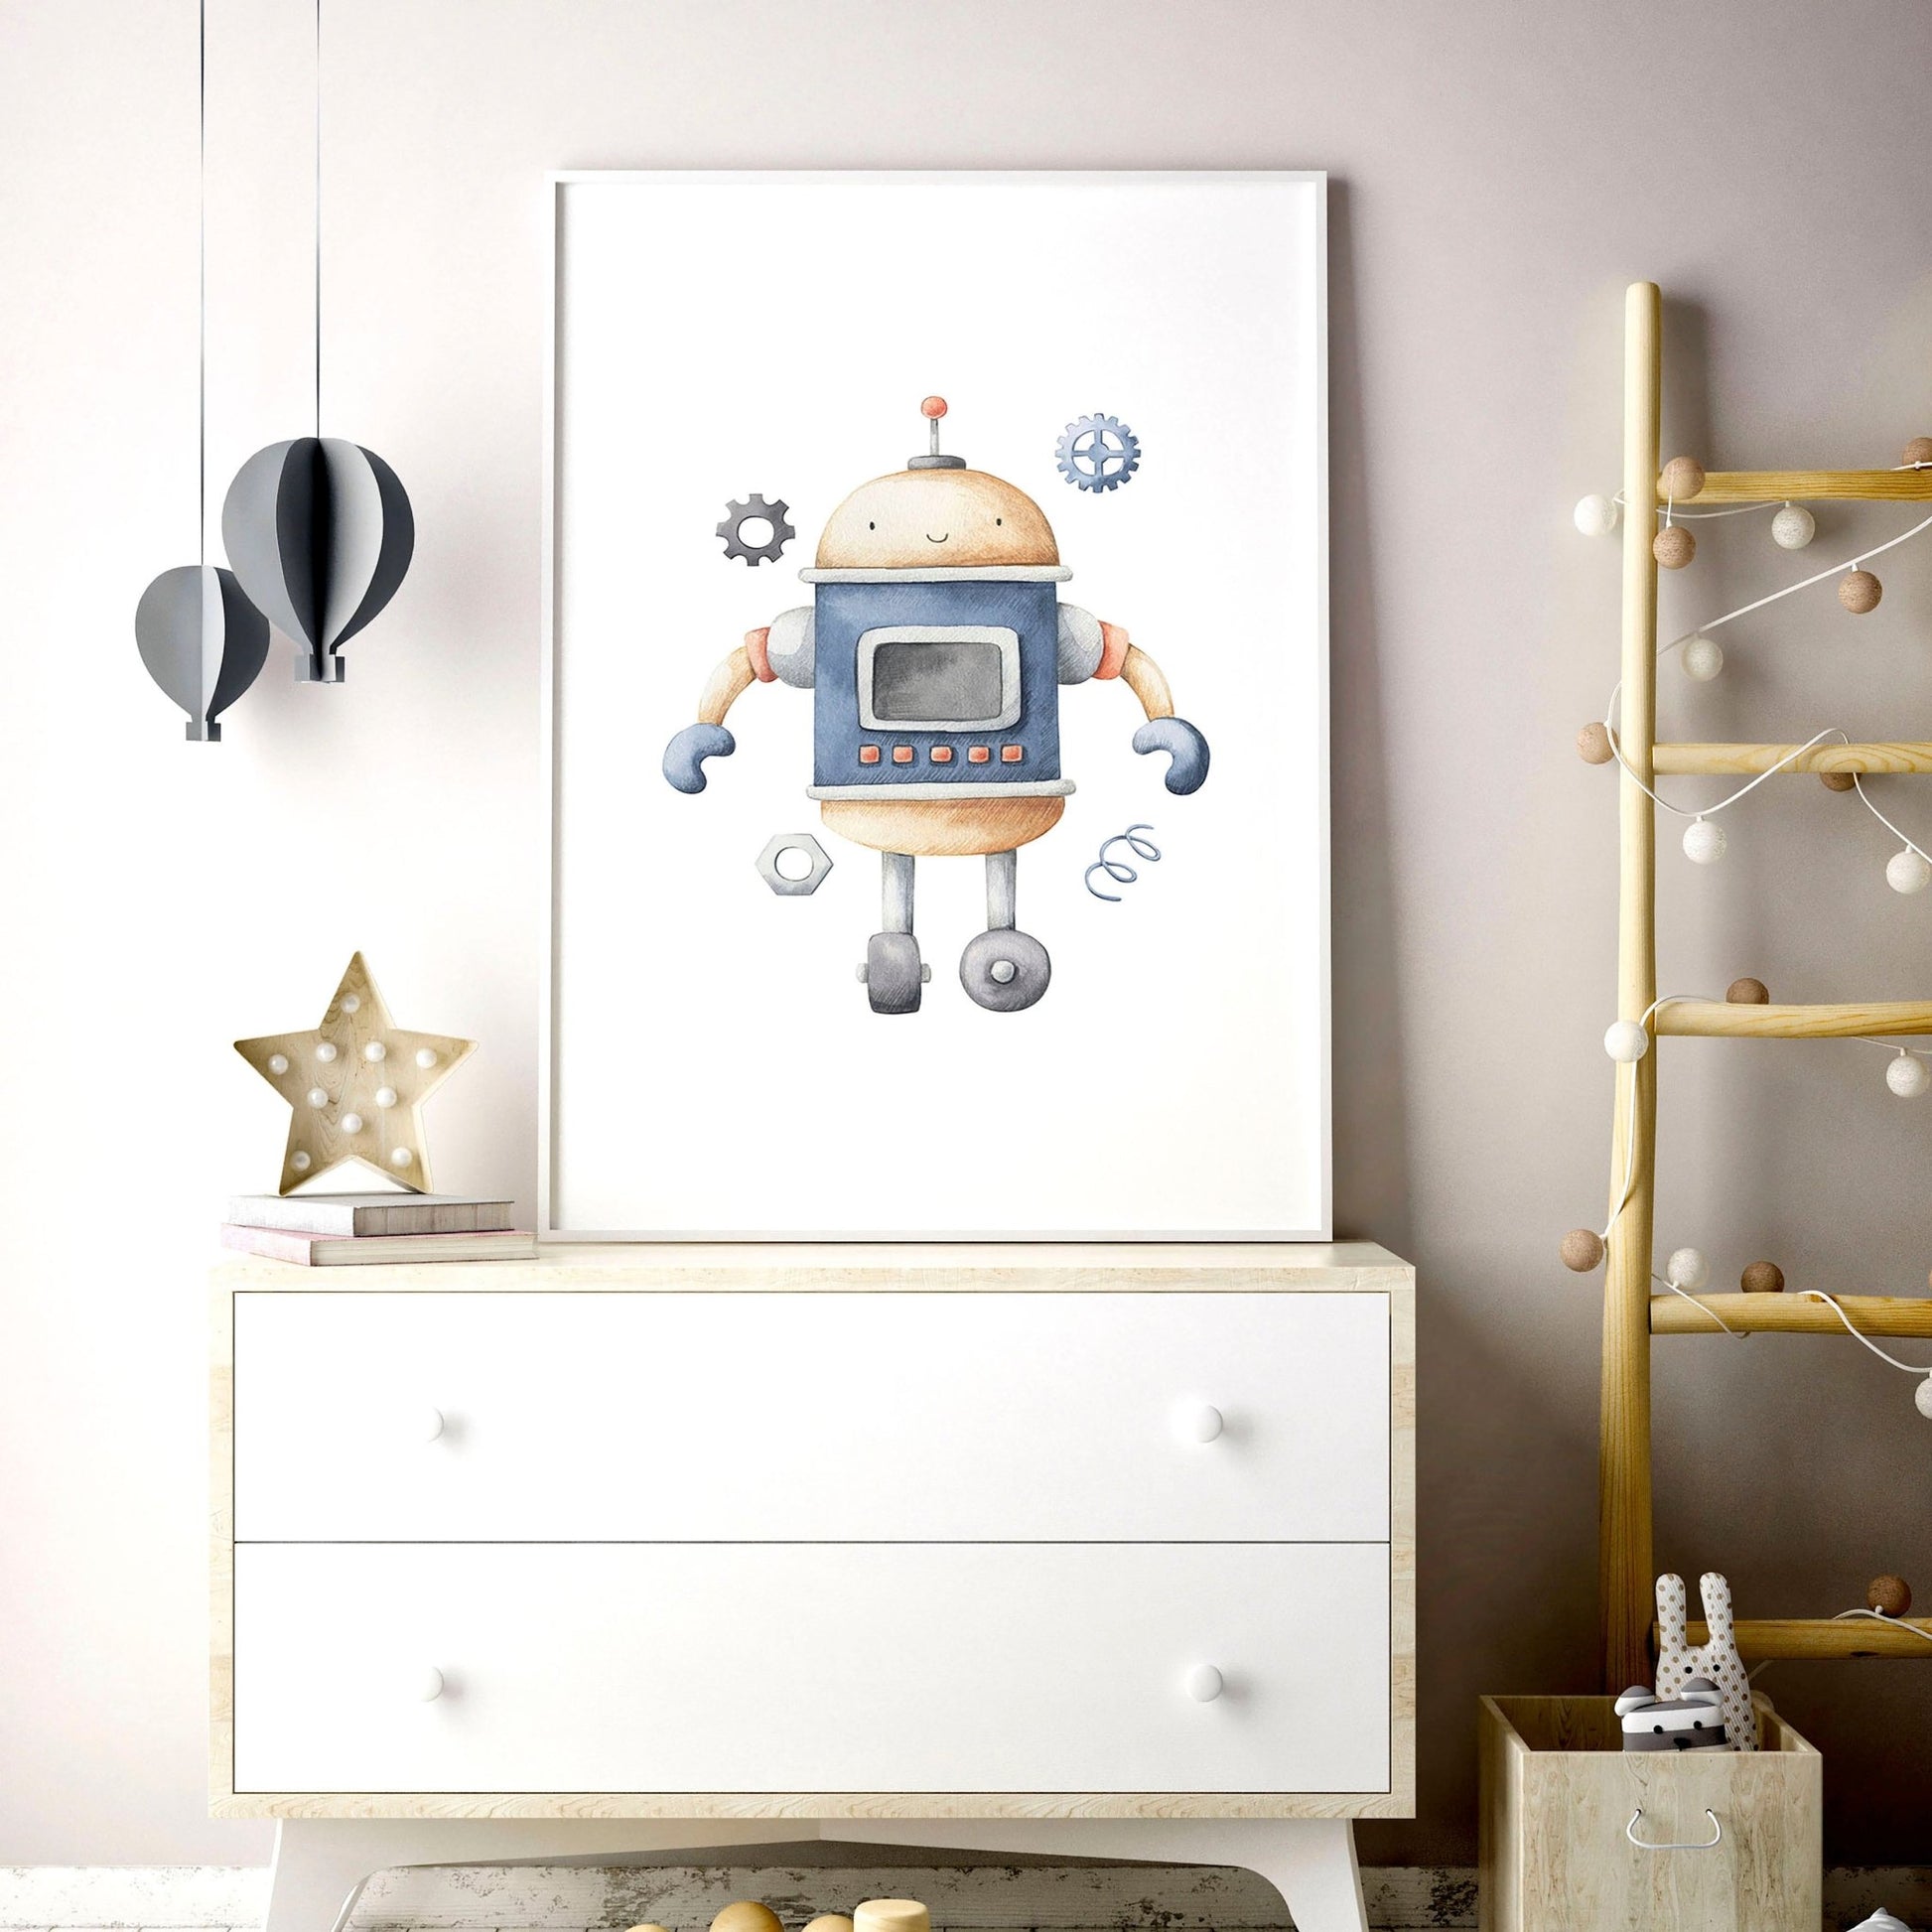 Wall art nursery | set of 3 vintage Robots art prints